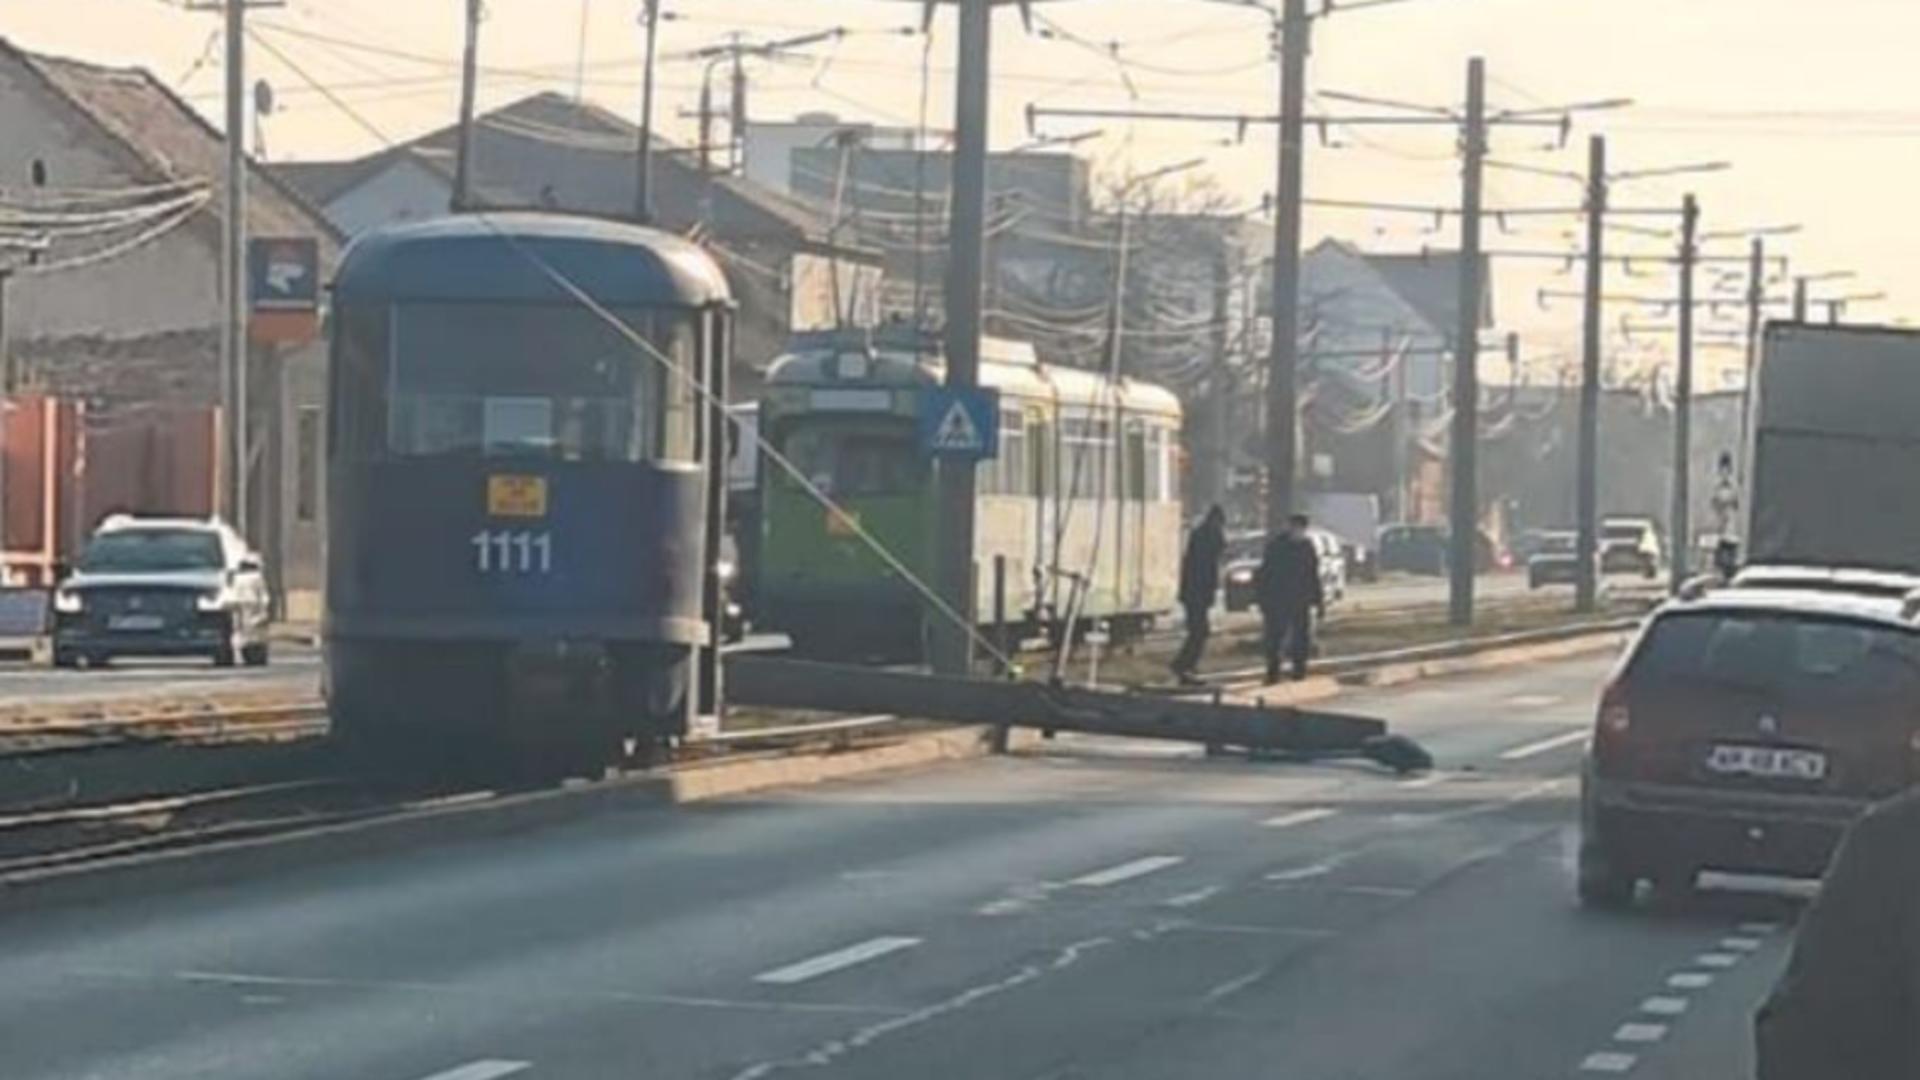 Tramvai deraiat în Arad. Foto/Arad Traffic